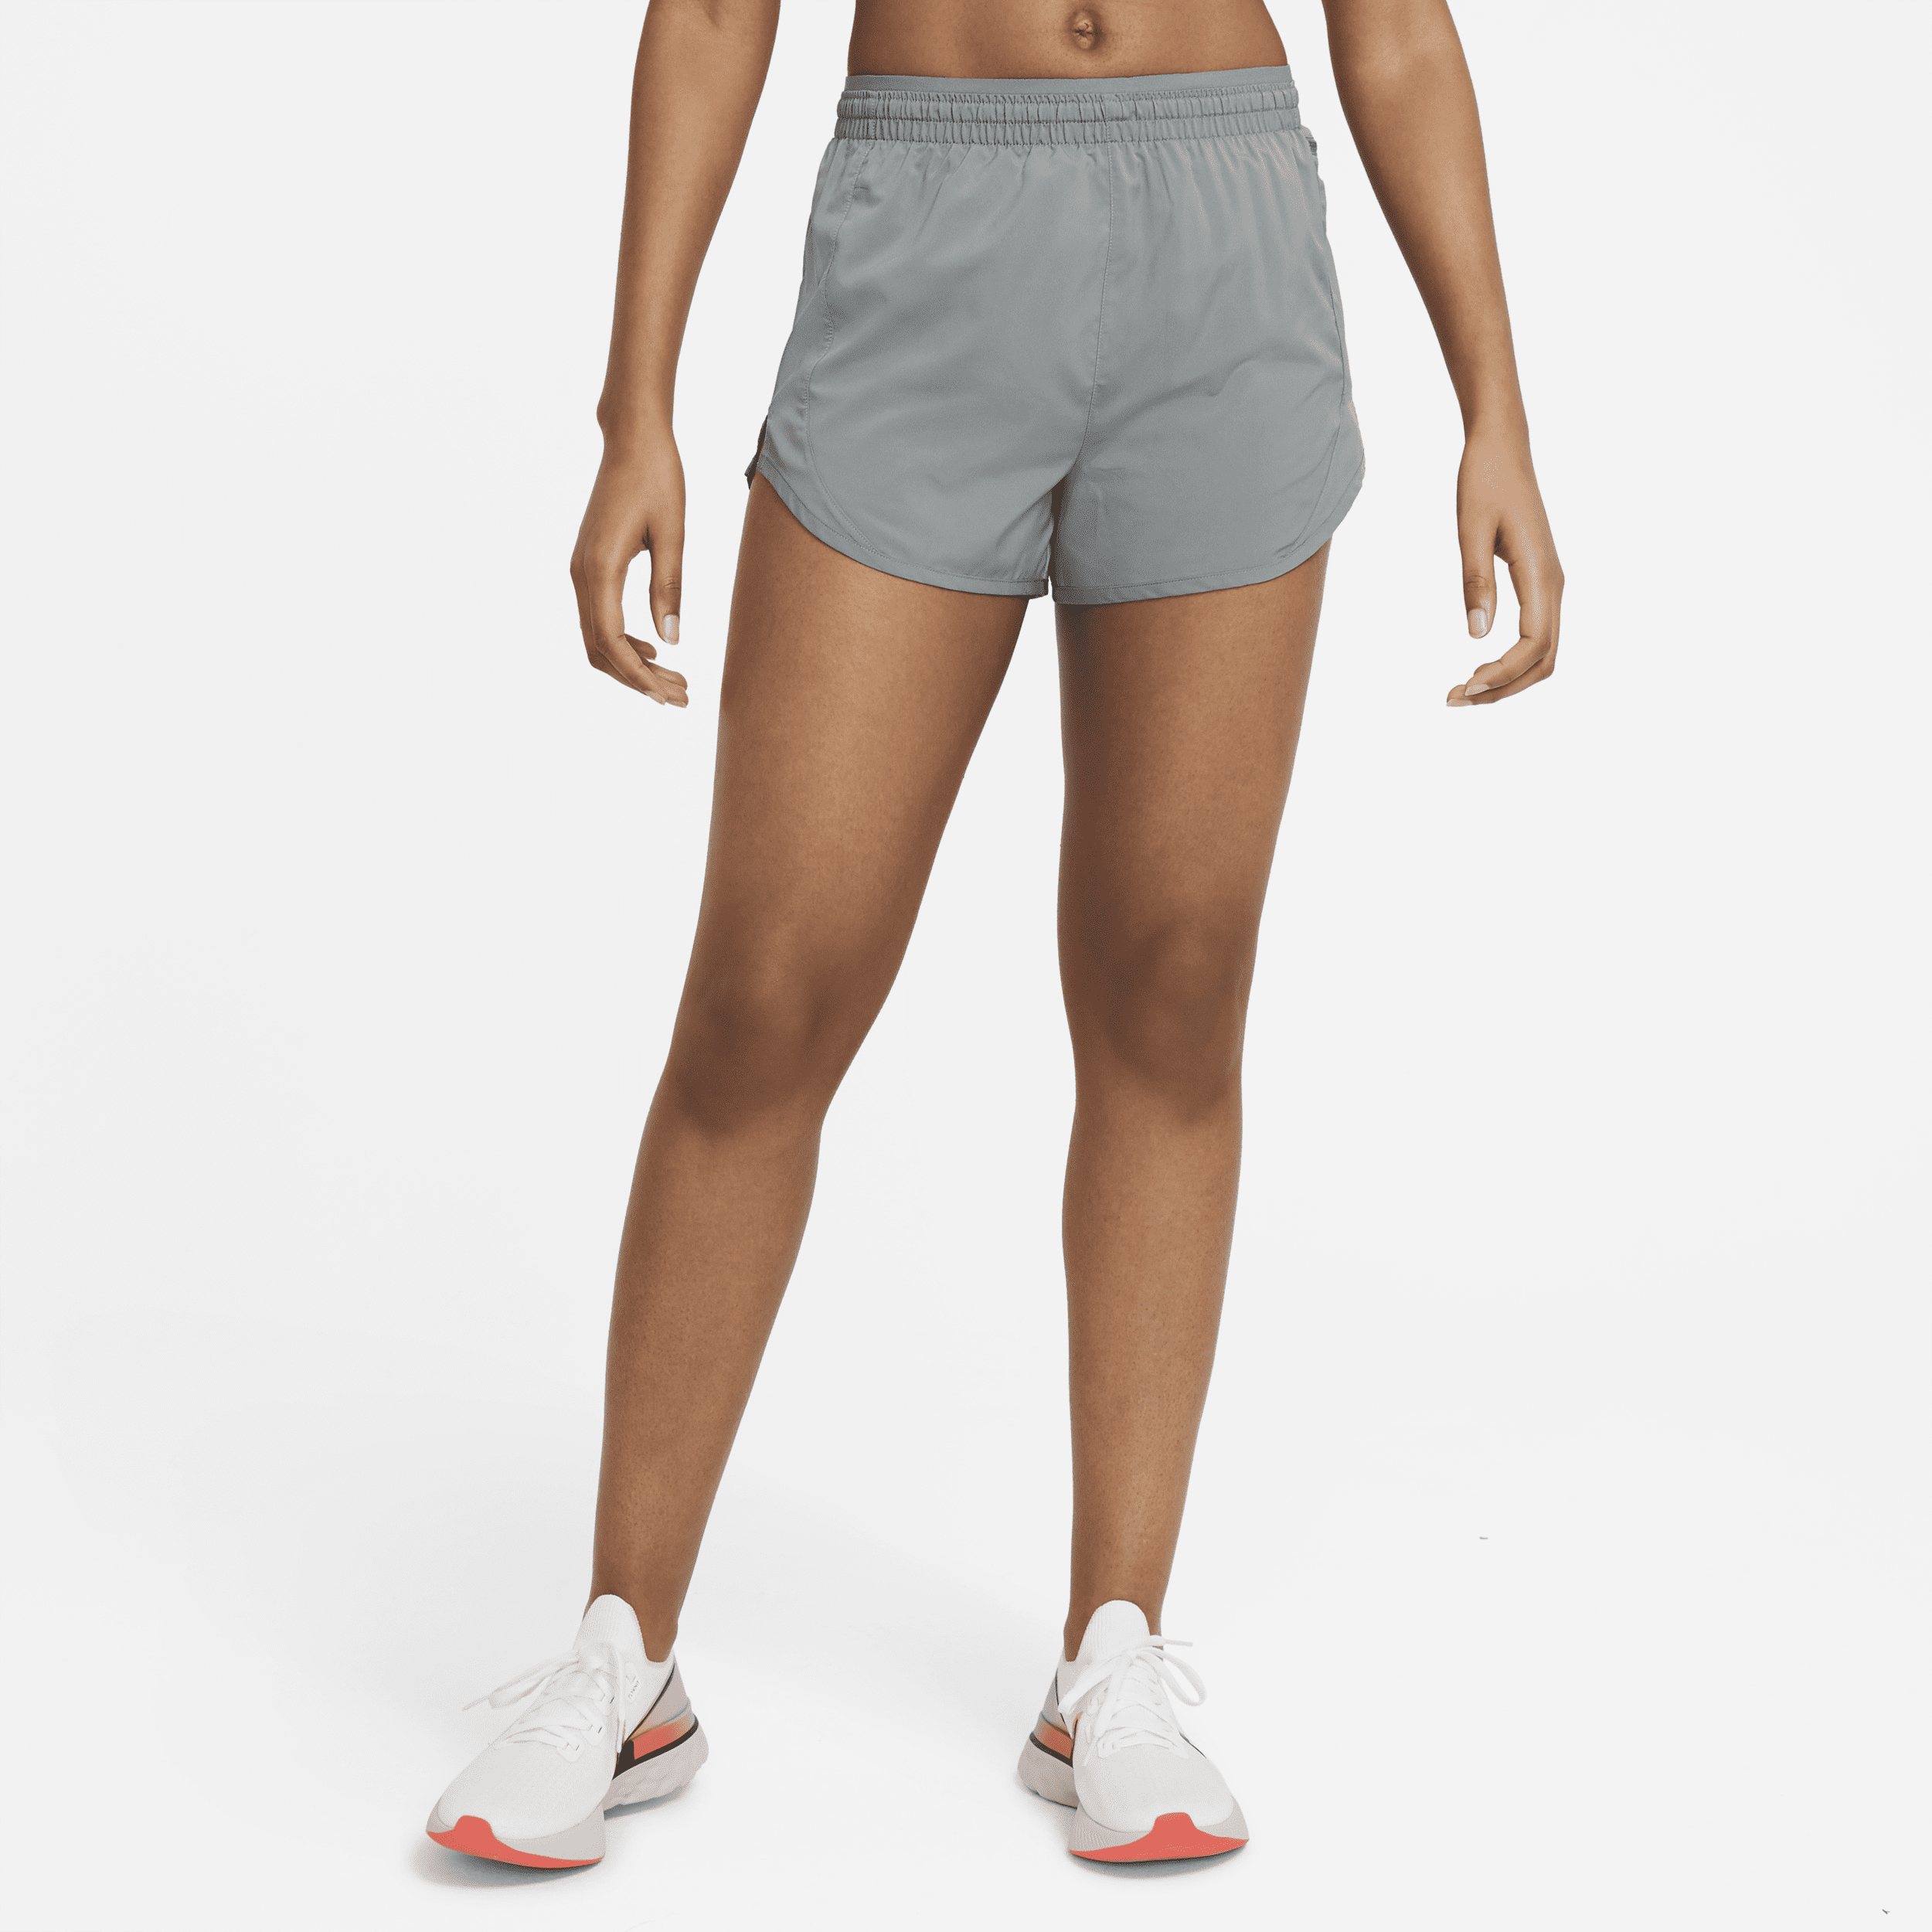 Nike Tempo Luxe Hardloopshorts voor dames (8 cm) - Grijs